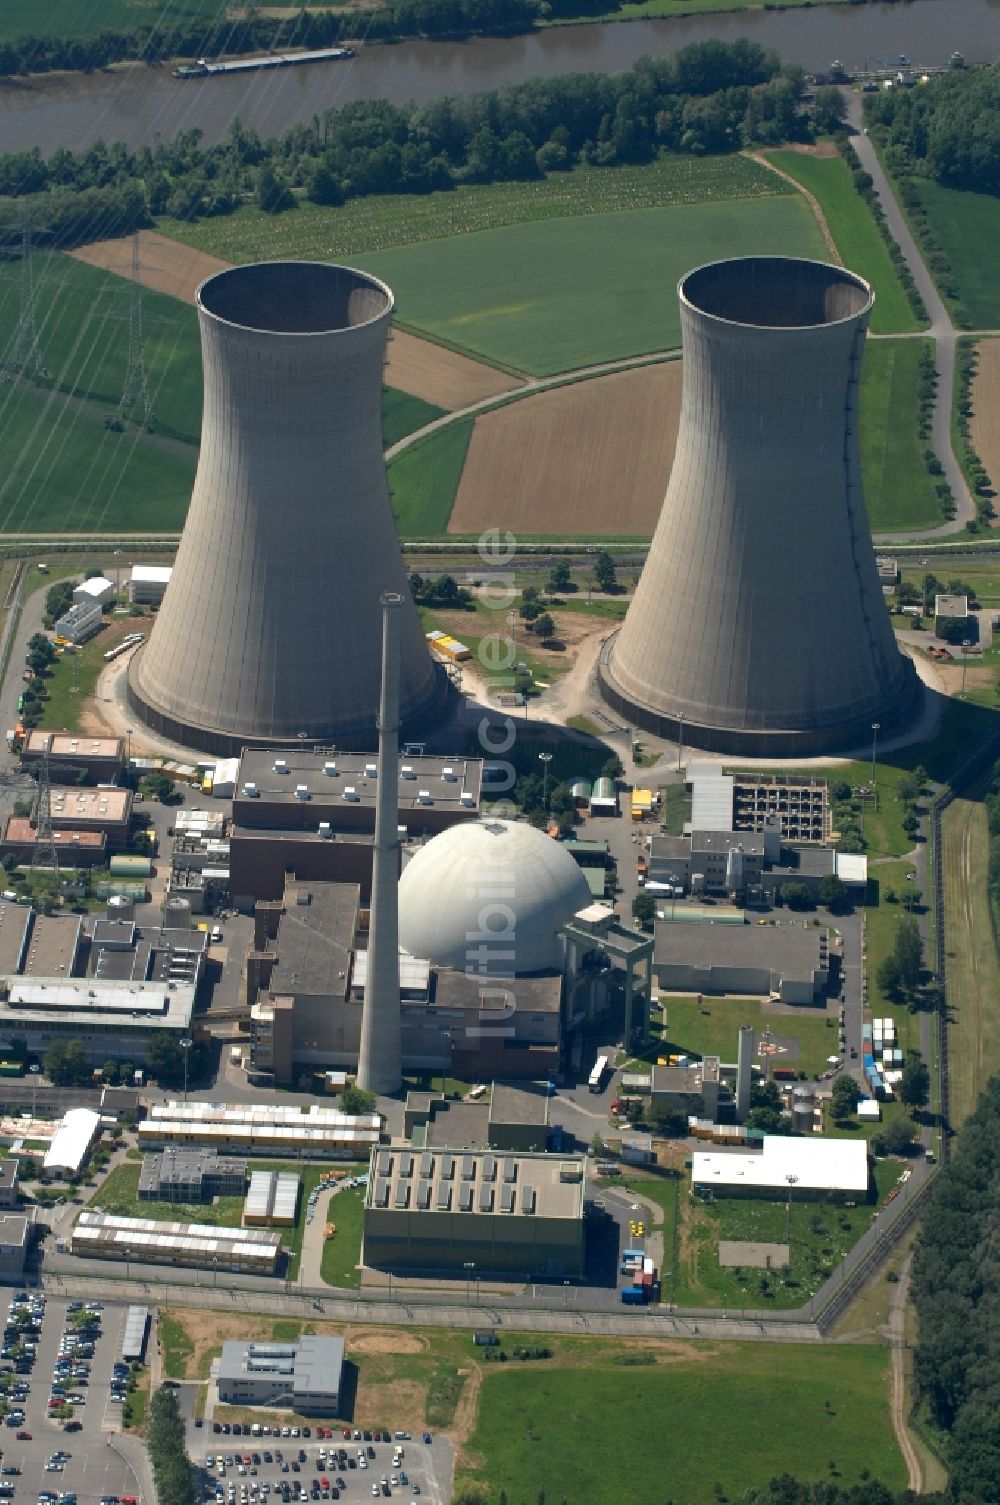 Grafenrheinfeld von oben - Reaktorblöcke und Anlagen des AKW - KKW Kernkraftwerk in Grafenrheinfeld im Bundesland Bayern